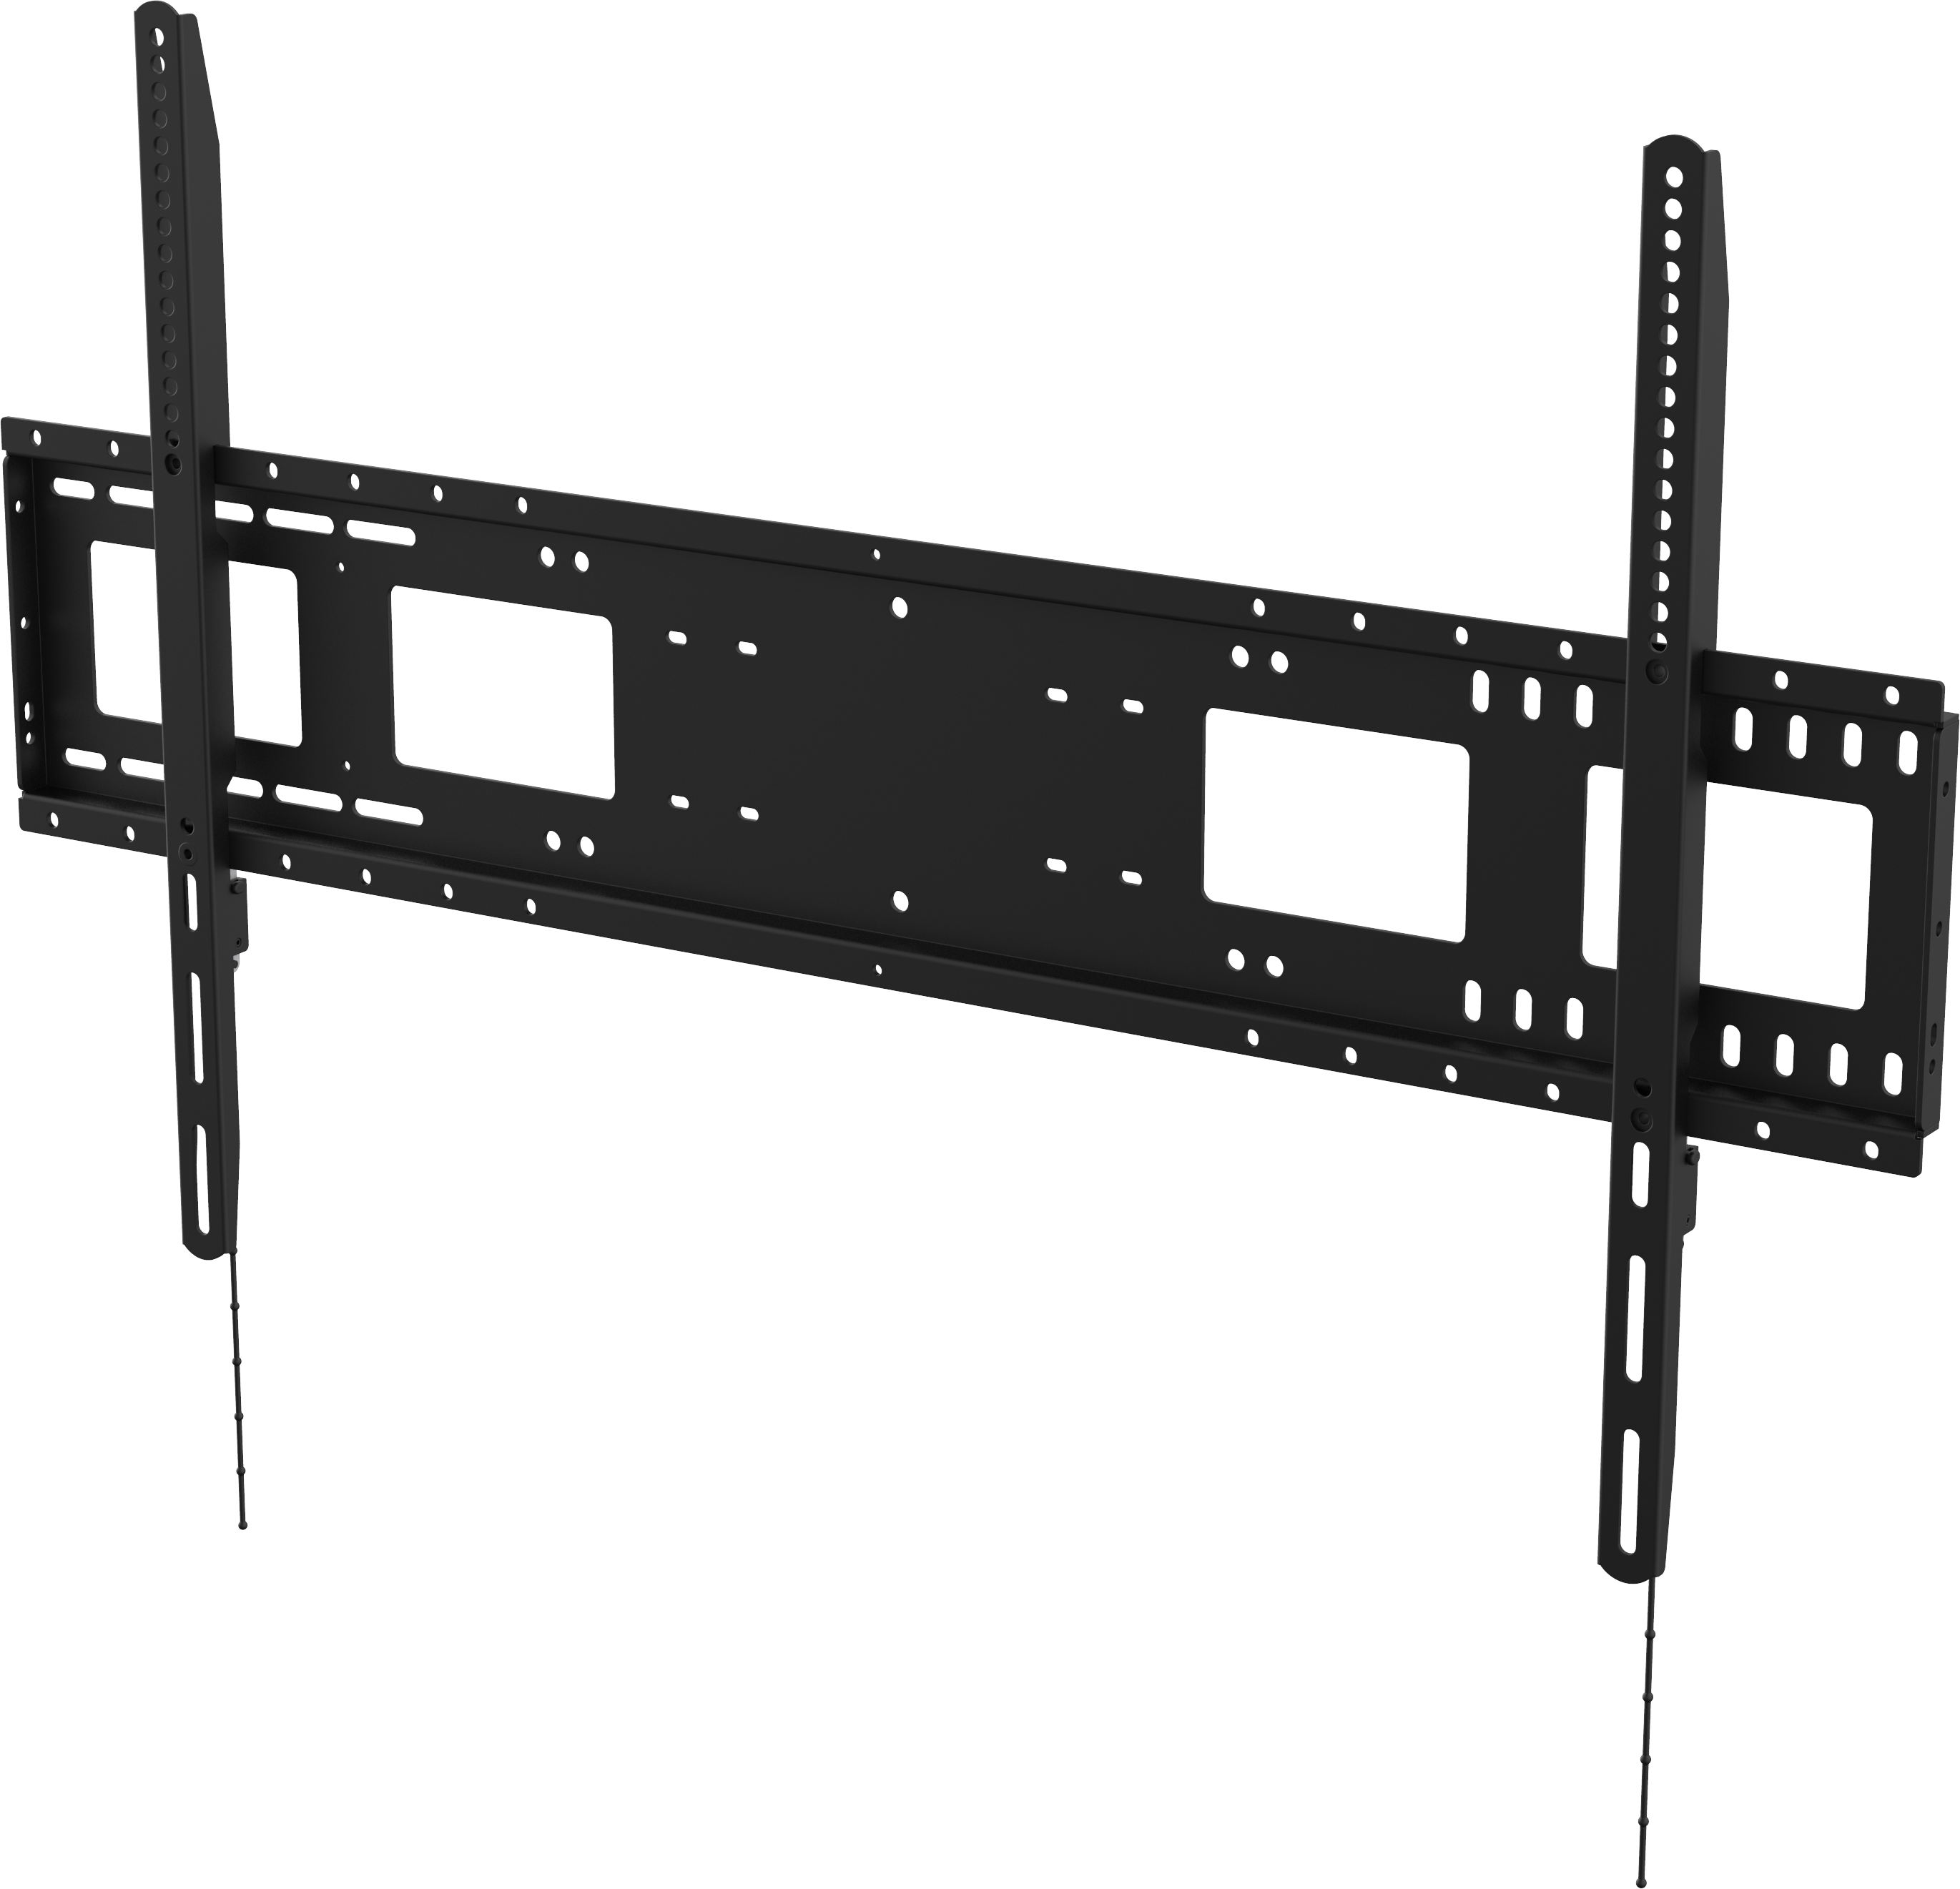 An image showing Sistema di montaggio a parete per schermi piatti per carichi pesanti 1000 × 600